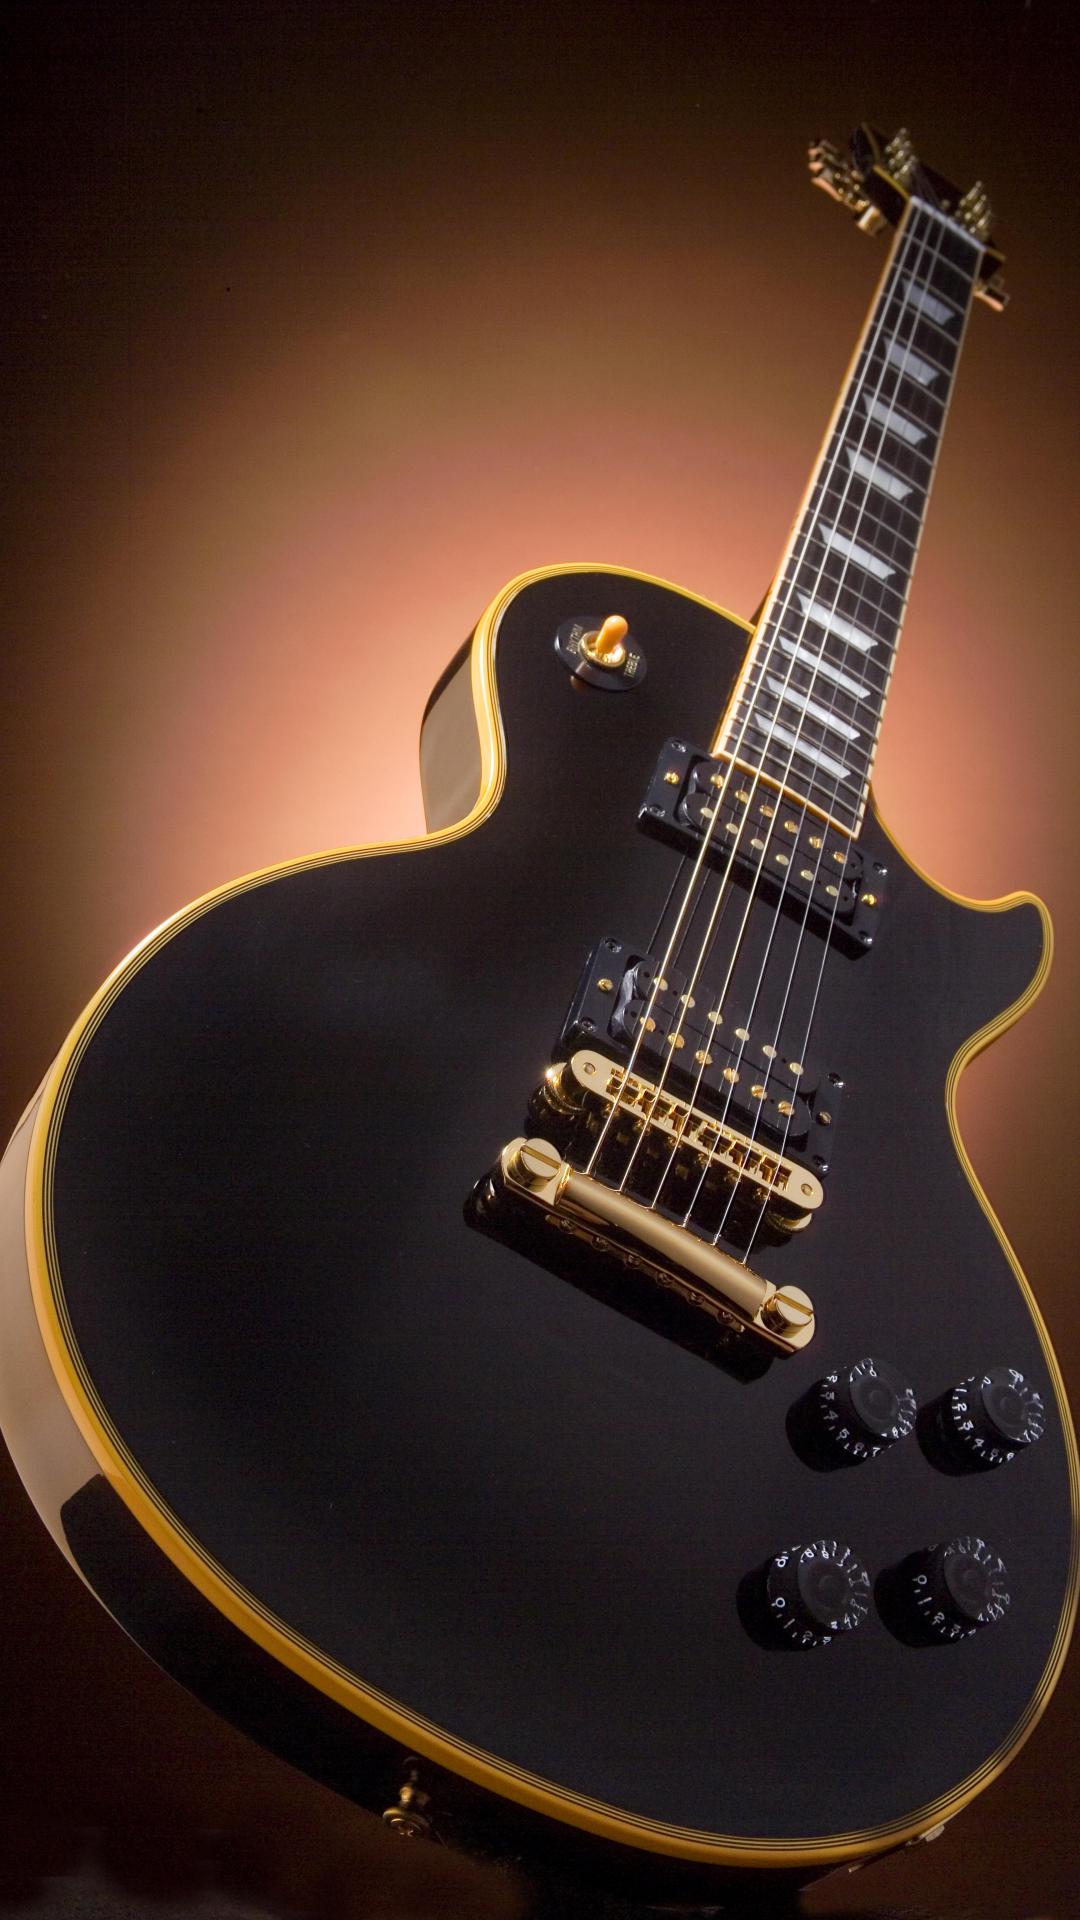 Screenheaven Gibson Les Paul Guitars Desktop And Mobile